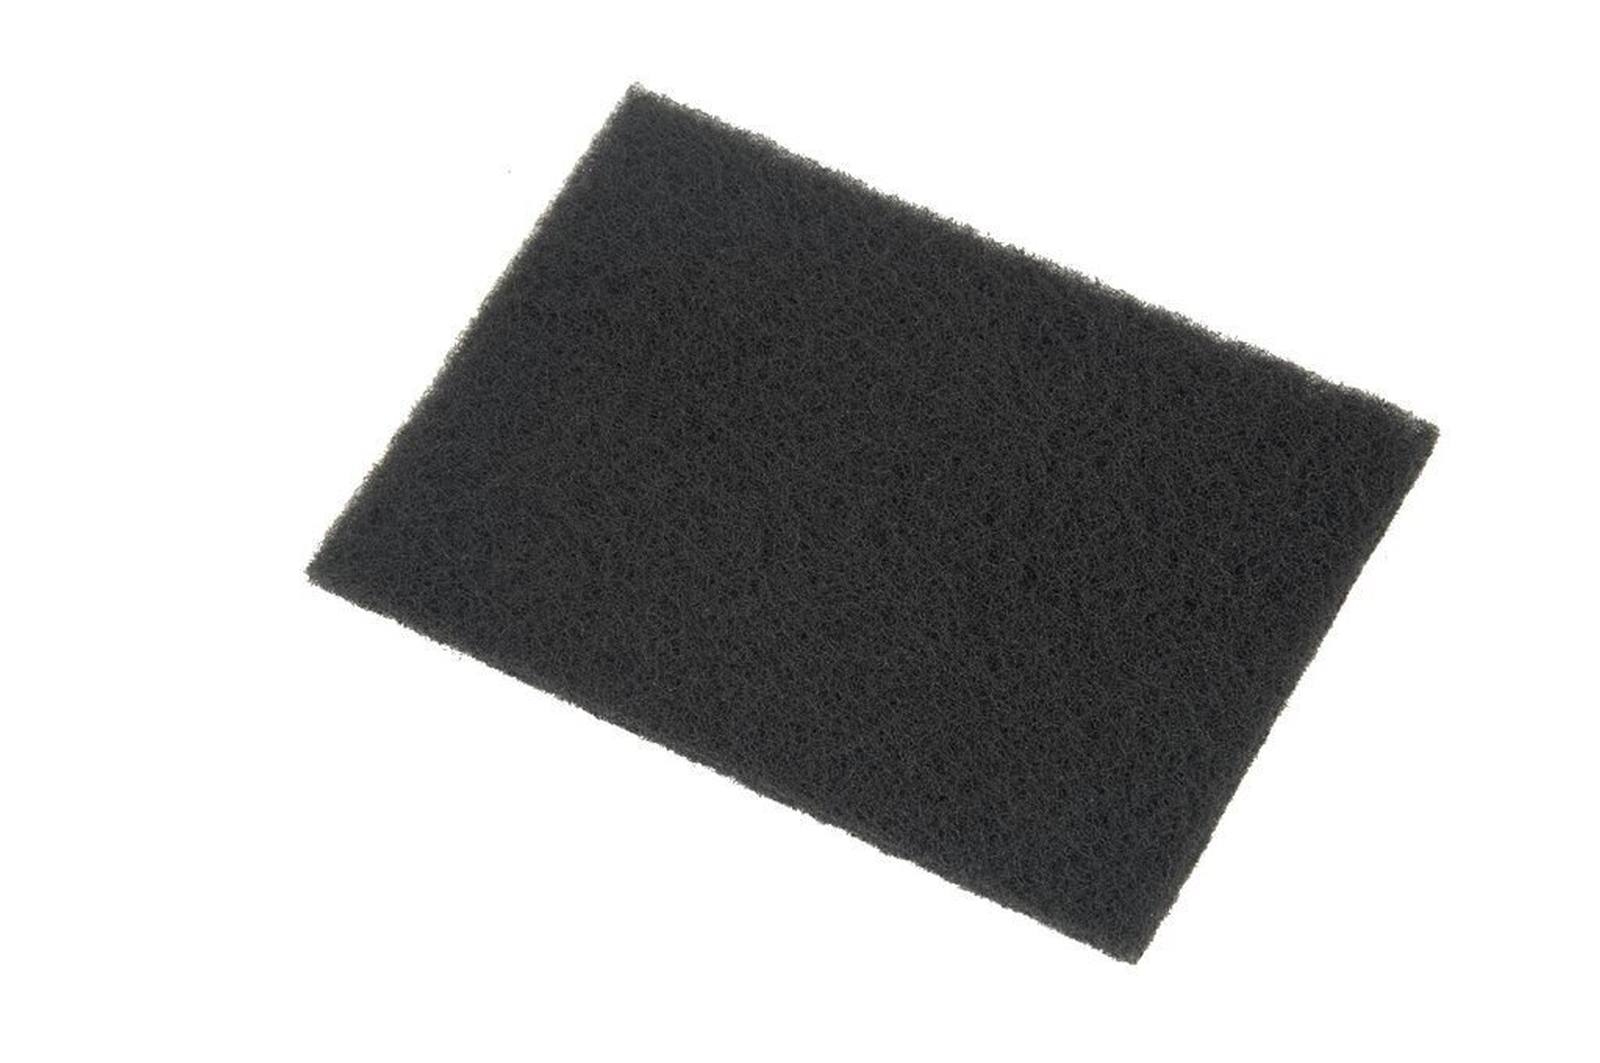 3M Scotch-Brite Hand pad 2295, black, 158 mm x 224 mm x 12 mm